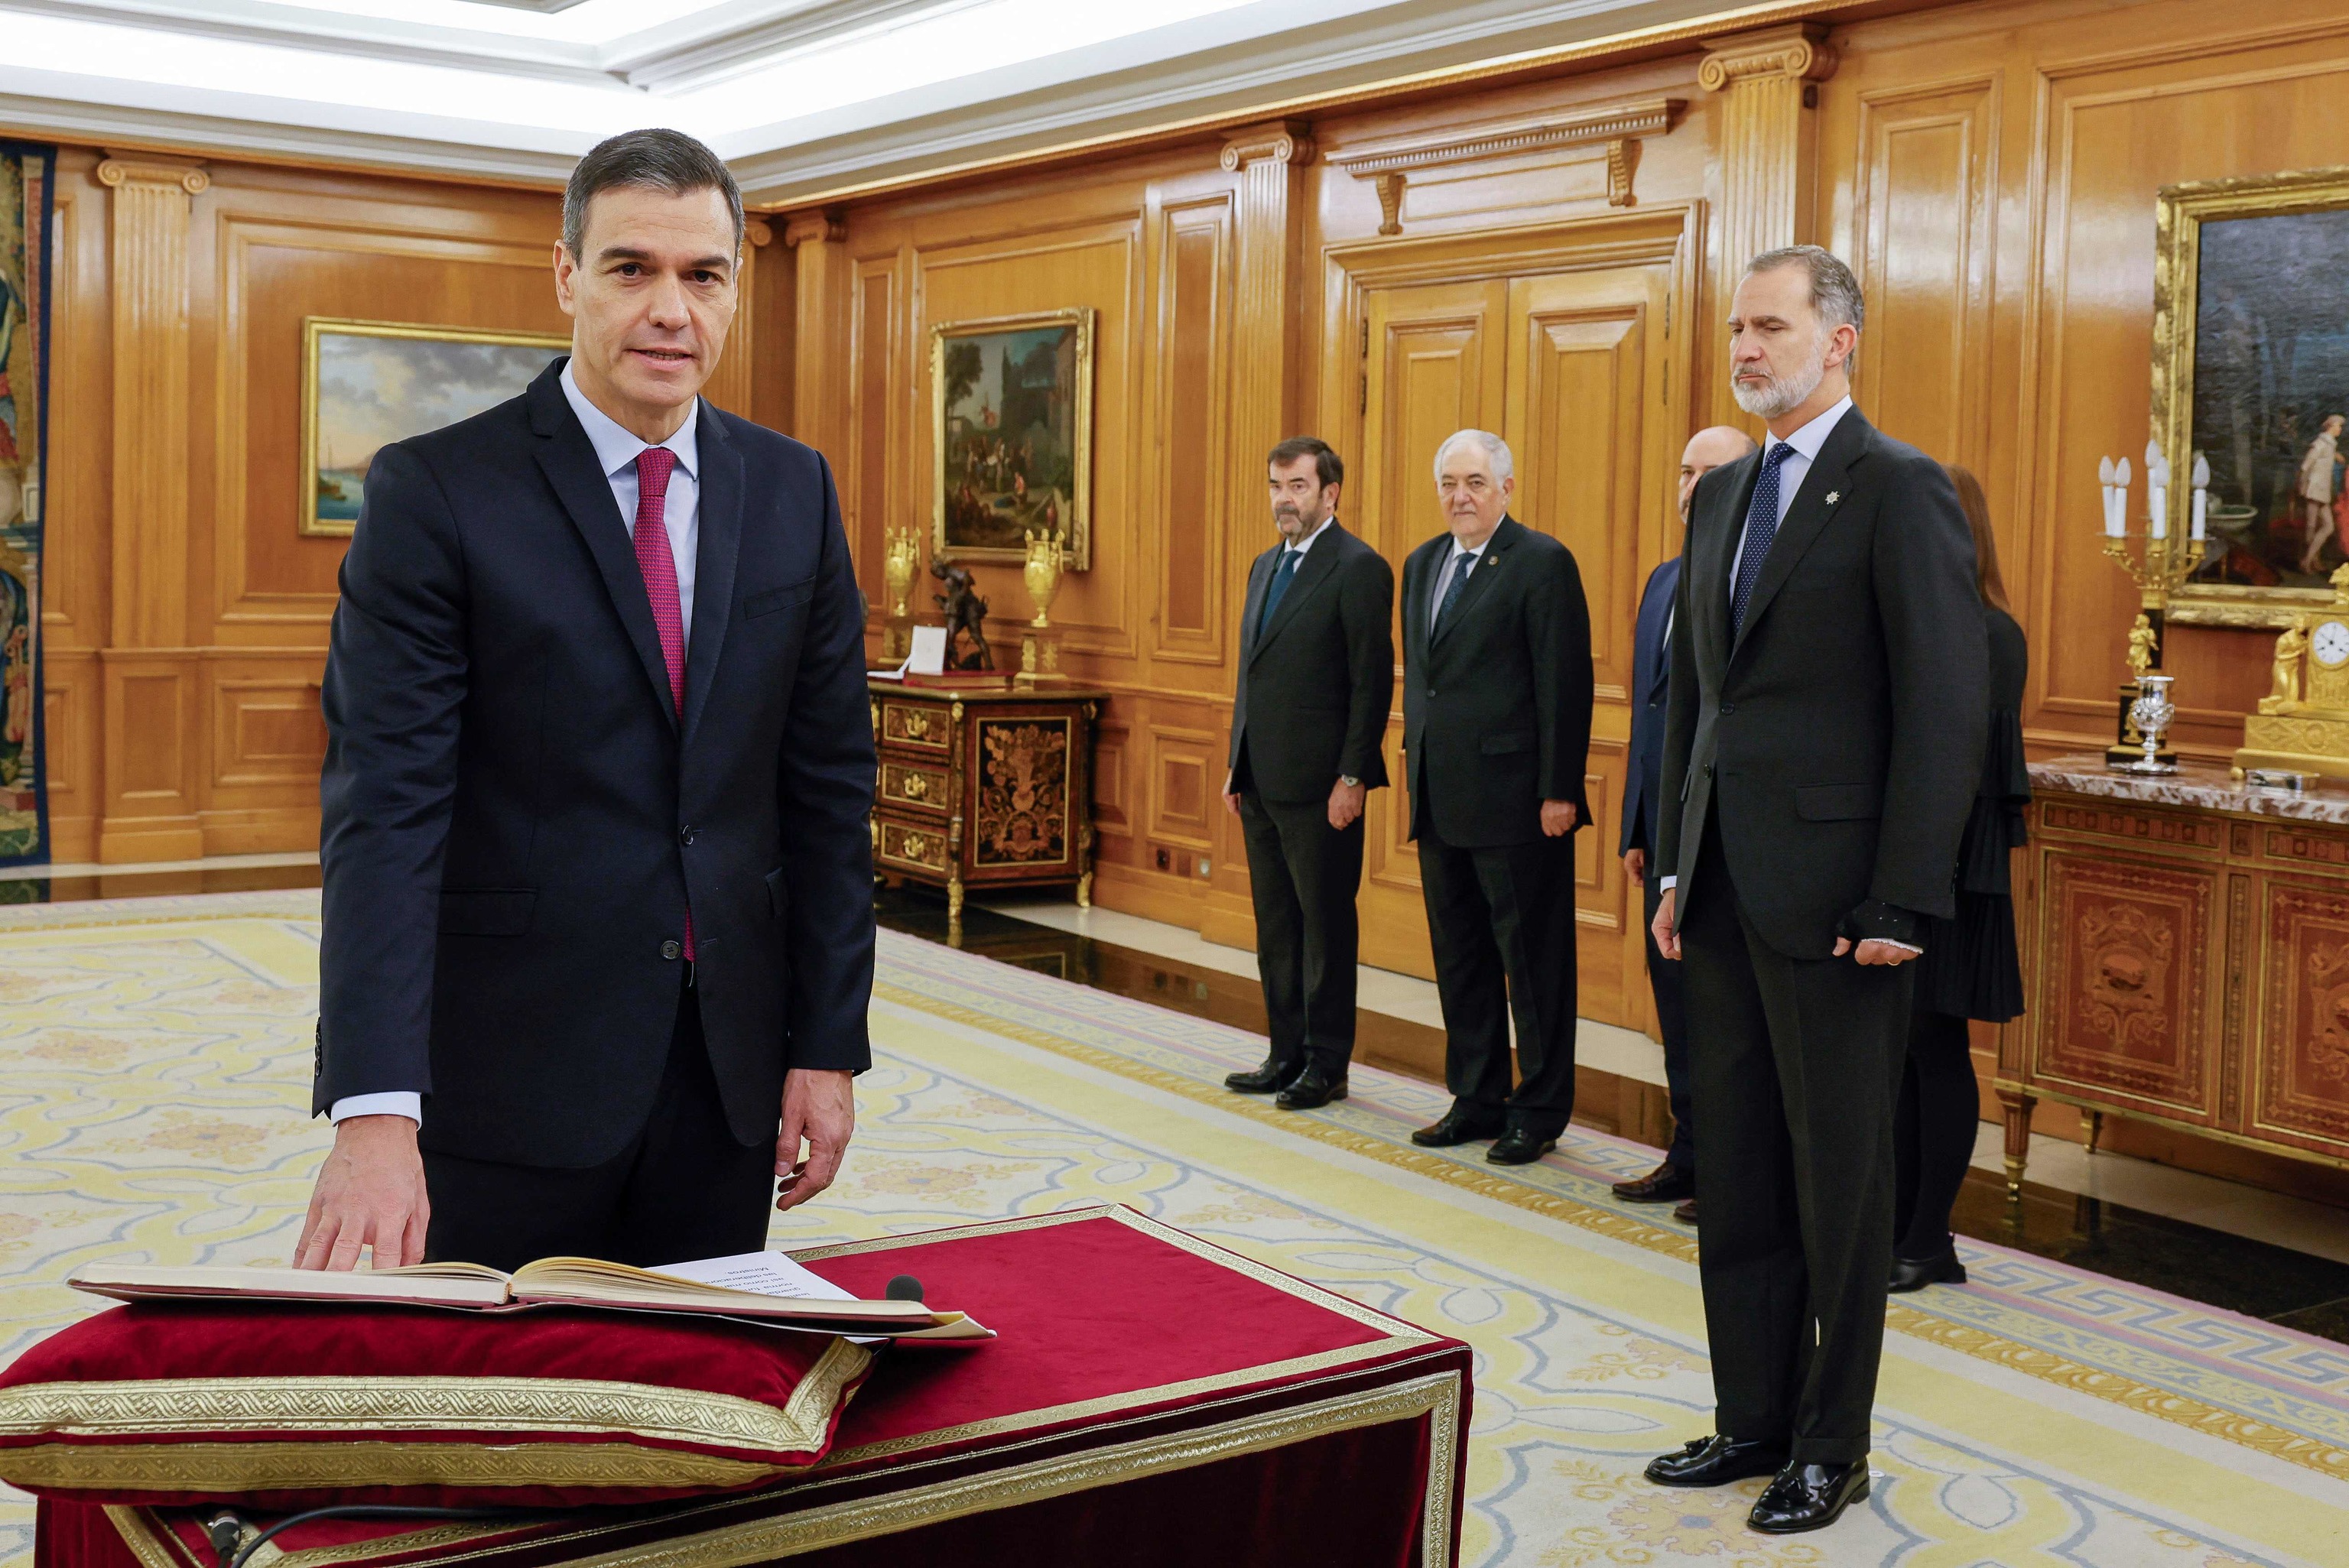 Pedro Sánchez jura su cargo ante la Constitución la semana pasada en presencia de su Majestad el Rey Felipe VI.